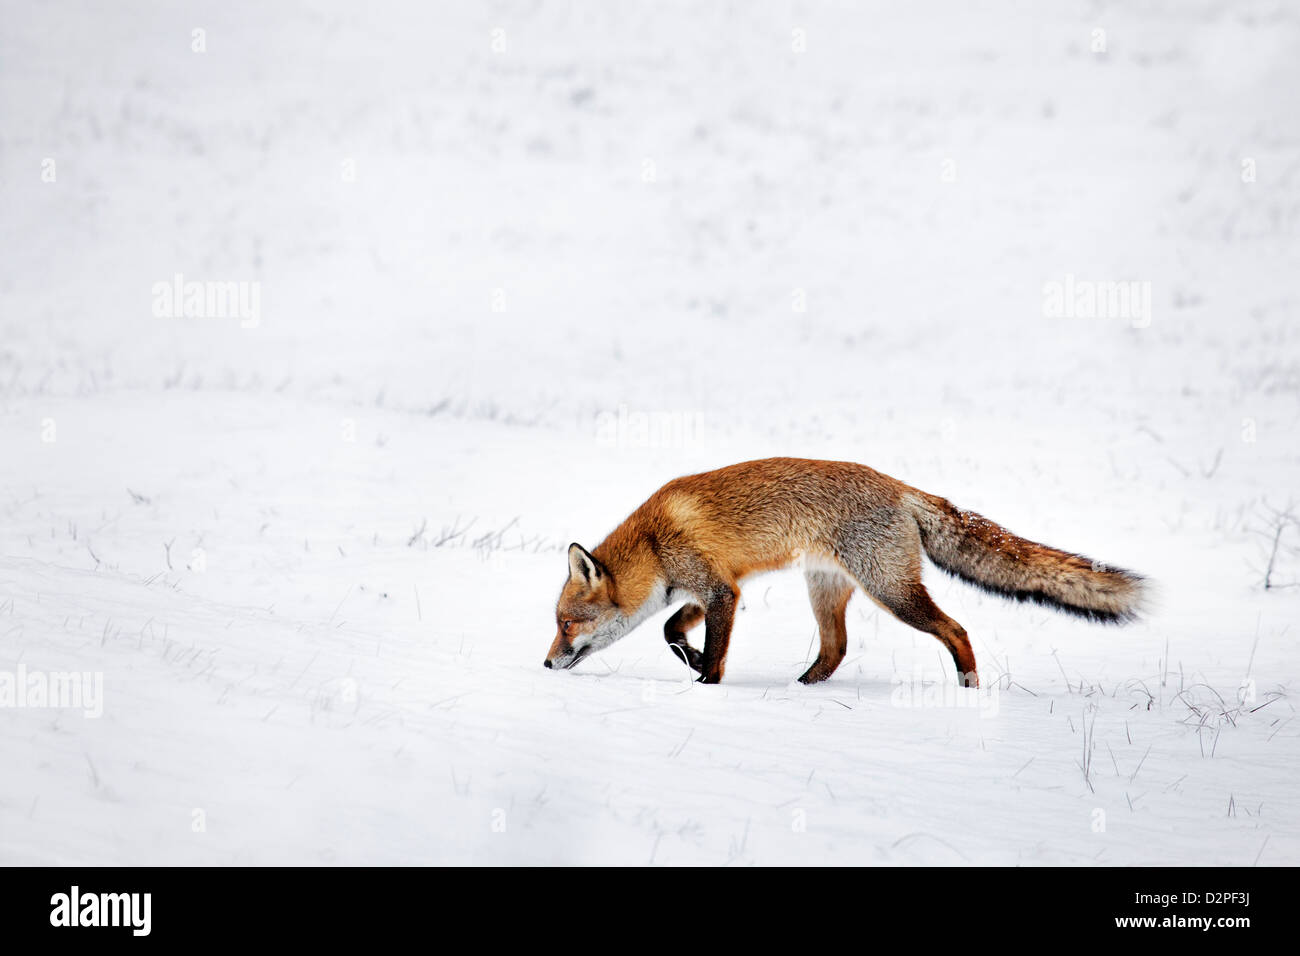 La Caza El Zorro Rojo (Vulpes vulpes) siguientes scent trail por presas en prados cubiertos de nieve en invierno Foto de stock